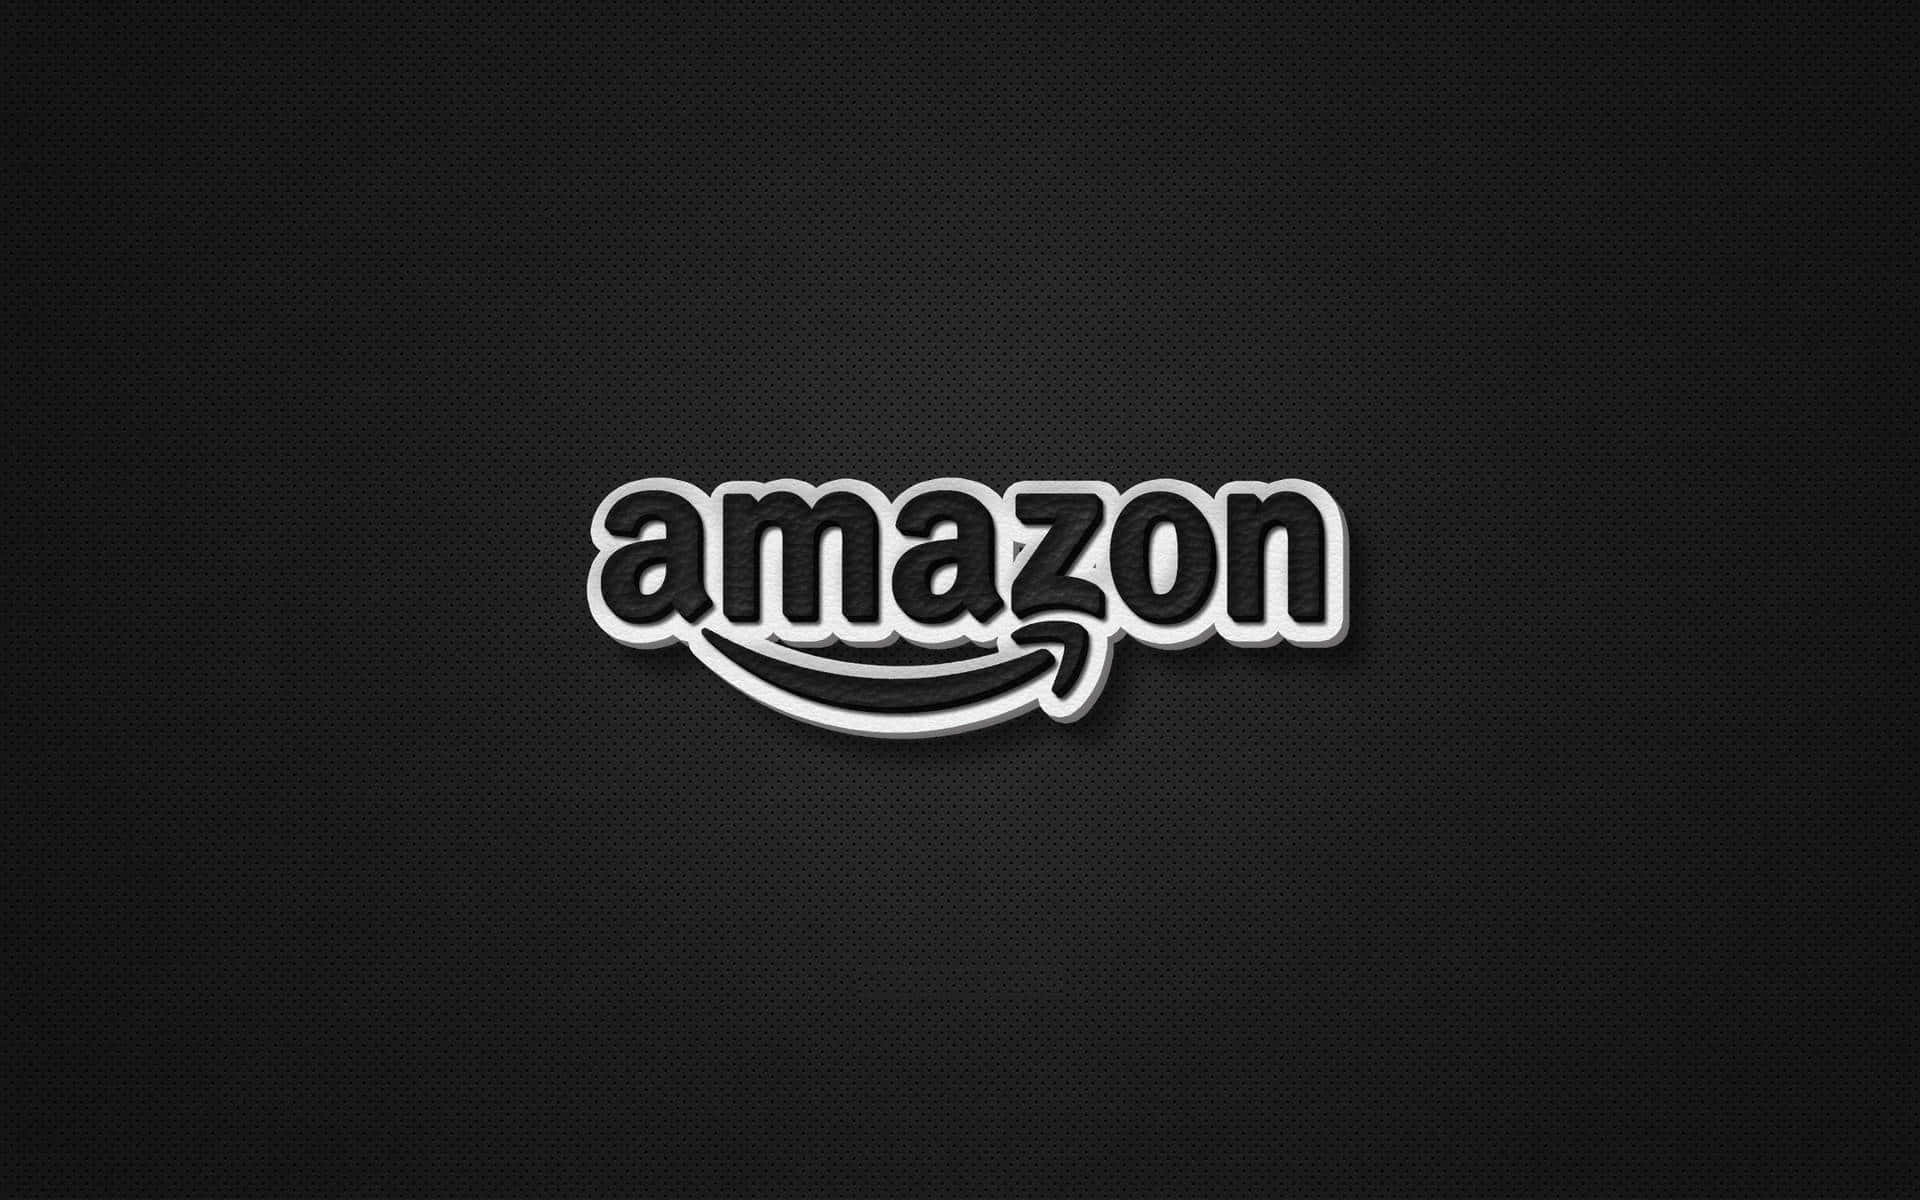 Logotipode Amazon Uk En Blanco Y Negro Fondo de pantalla